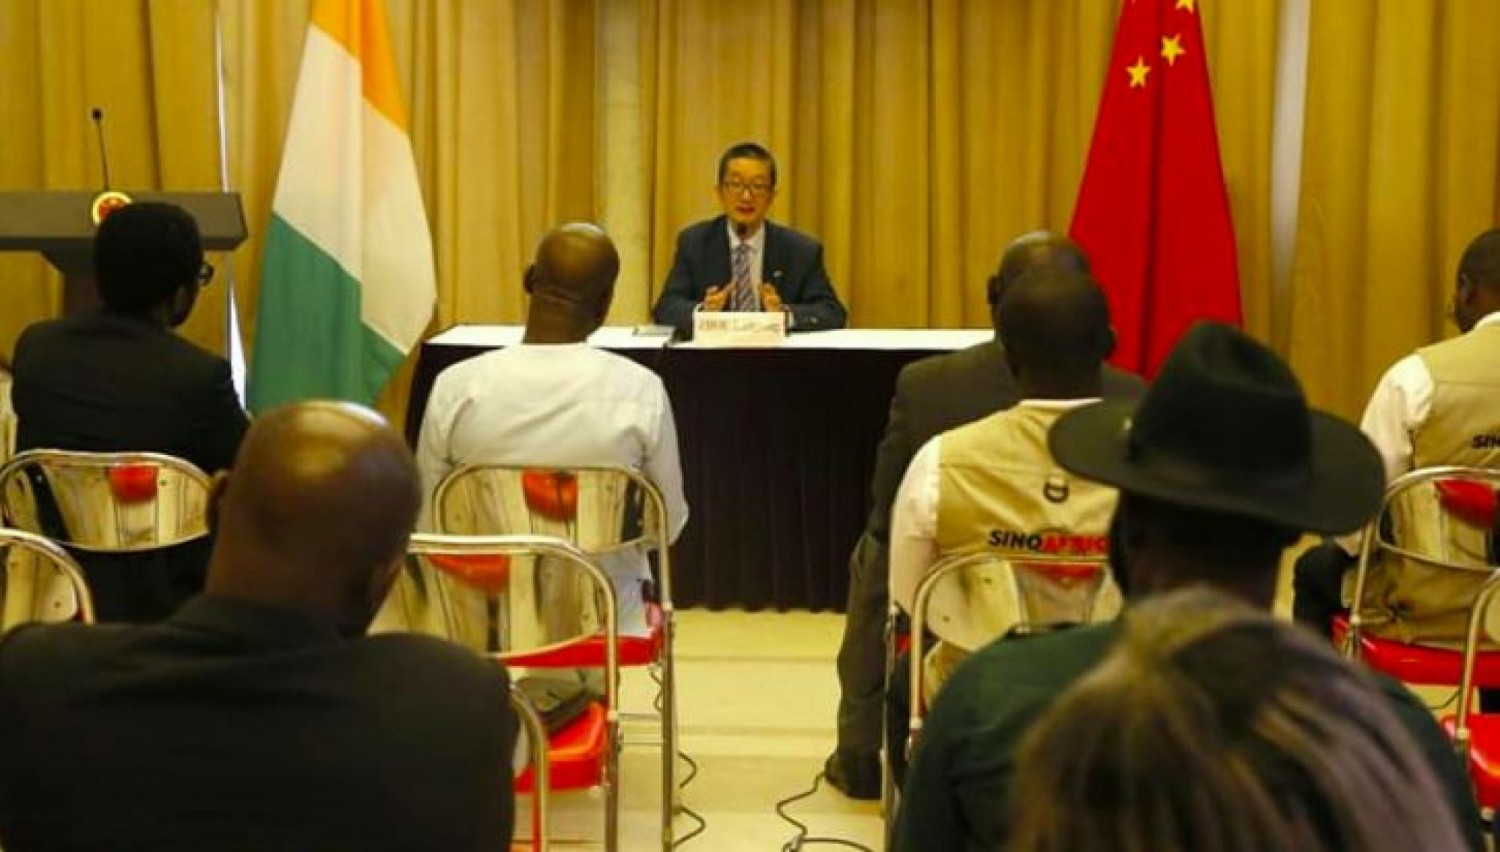 Côte d'Ivoire : Célébration des 40 ans de coopération, un diplomate Chinois avoue « l'amitié sino-ivoirienne repose sur des assises solides »